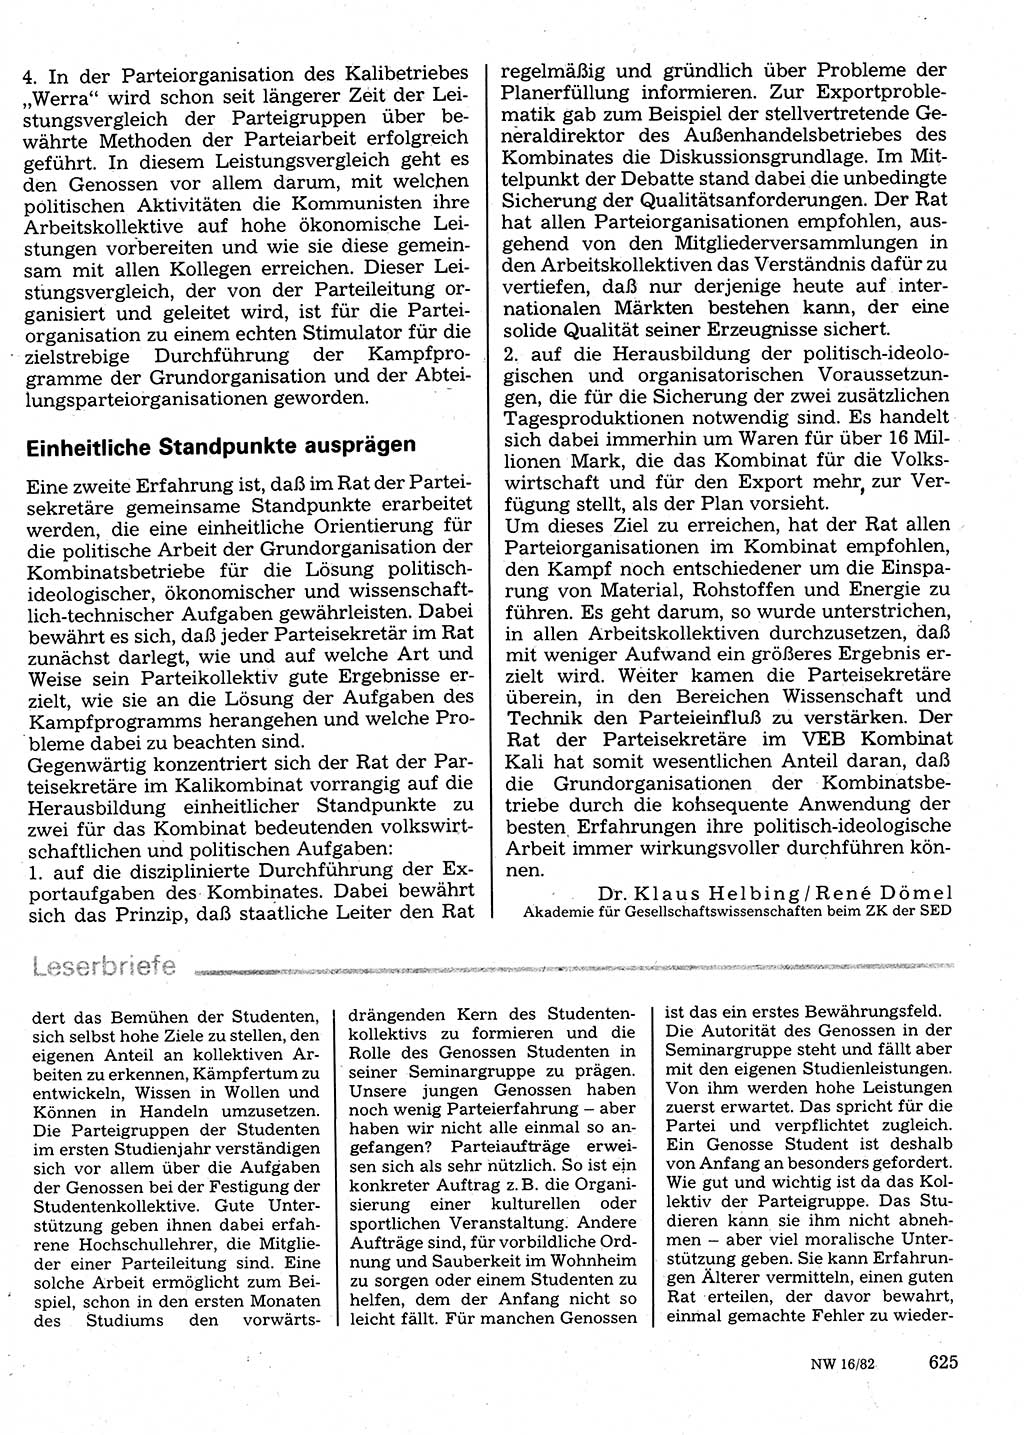 Neuer Weg (NW), Organ des Zentralkomitees (ZK) der SED (Sozialistische Einheitspartei Deutschlands) für Fragen des Parteilebens, 37. Jahrgang [Deutsche Demokratische Republik (DDR)] 1982, Seite 625 (NW ZK SED DDR 1982, S. 625)